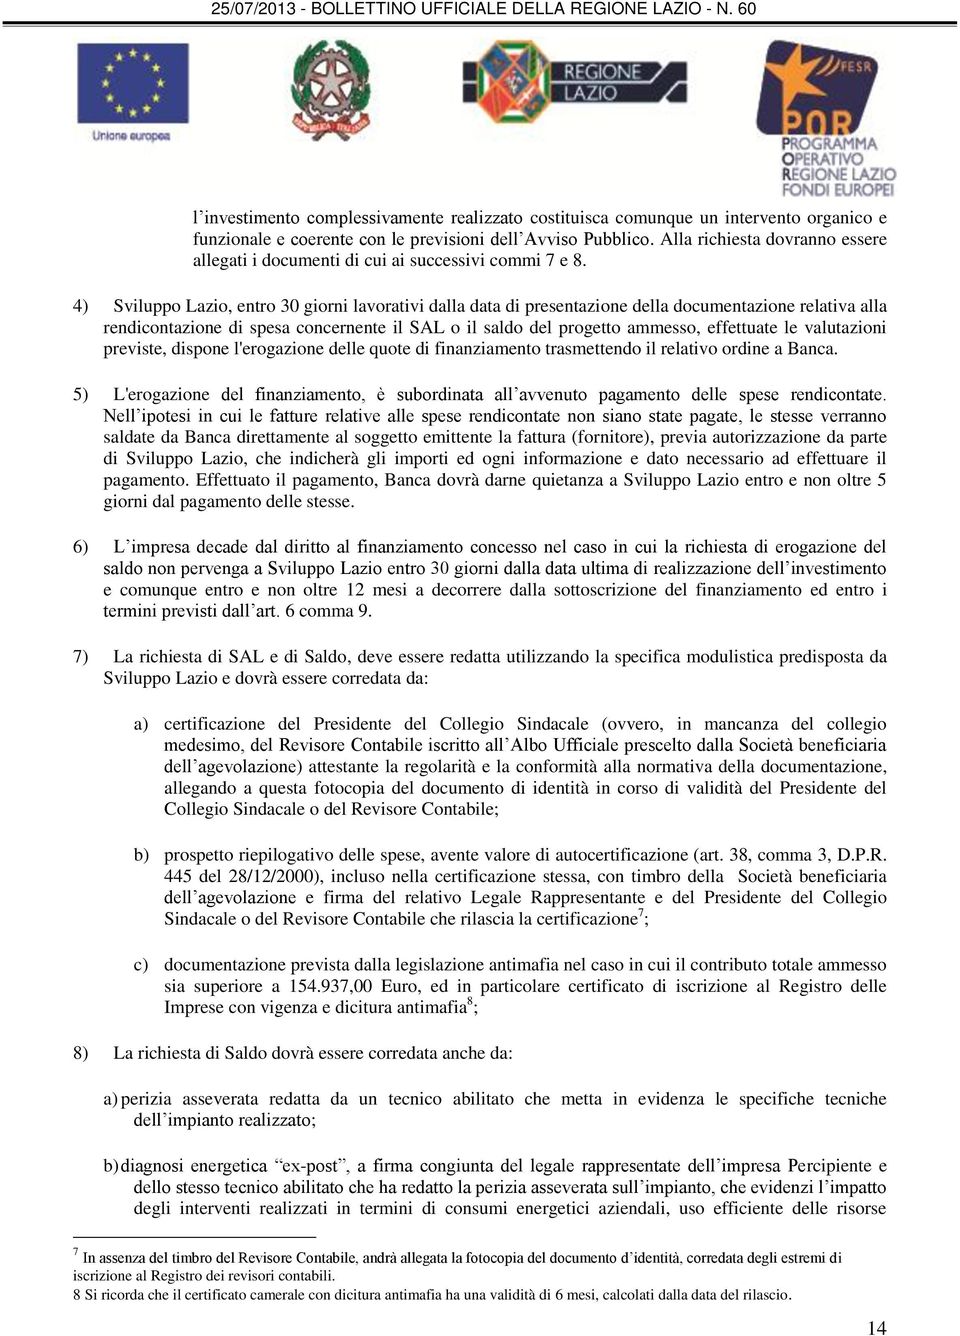 4) Sviluppo Lazio, entro 30 giorni lavorativi dalla data di presentazione della documentazione relativa alla rendicontazione di spesa concernente il SAL o il saldo del progetto ammesso, effettuate le